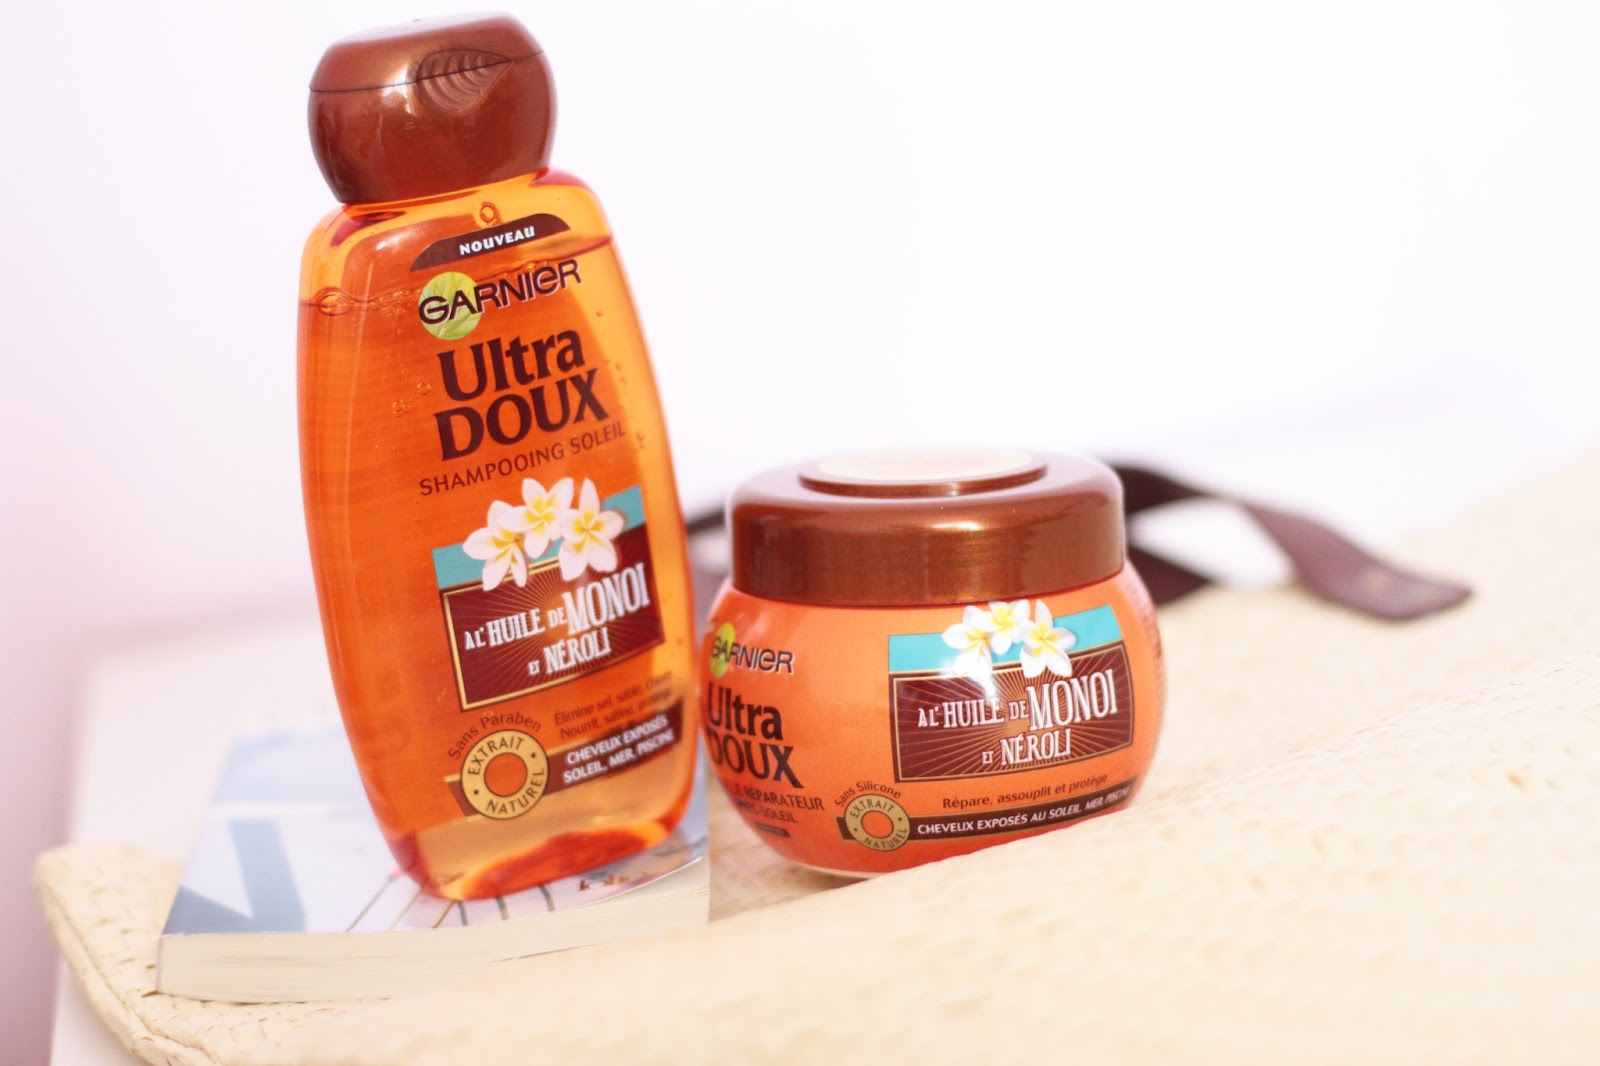 Ultra Doux shampooing et masque soleil à l'Huile de Monoï et de Neroli